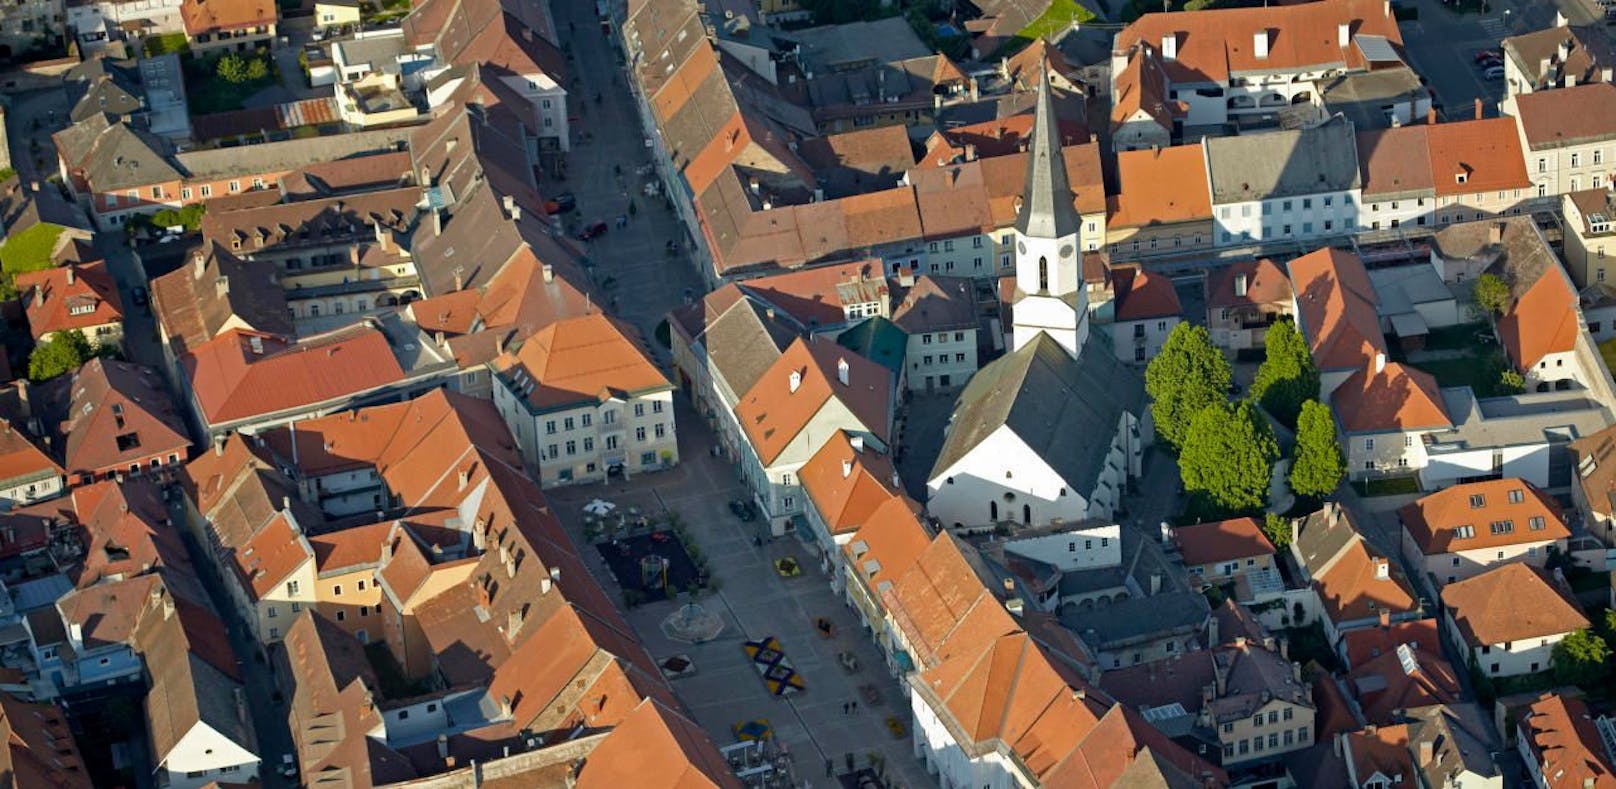 Luftaufnahme von St. Veit an der Glan, das Zentrum des gleichnamigen Bezirkes in Kärnten.